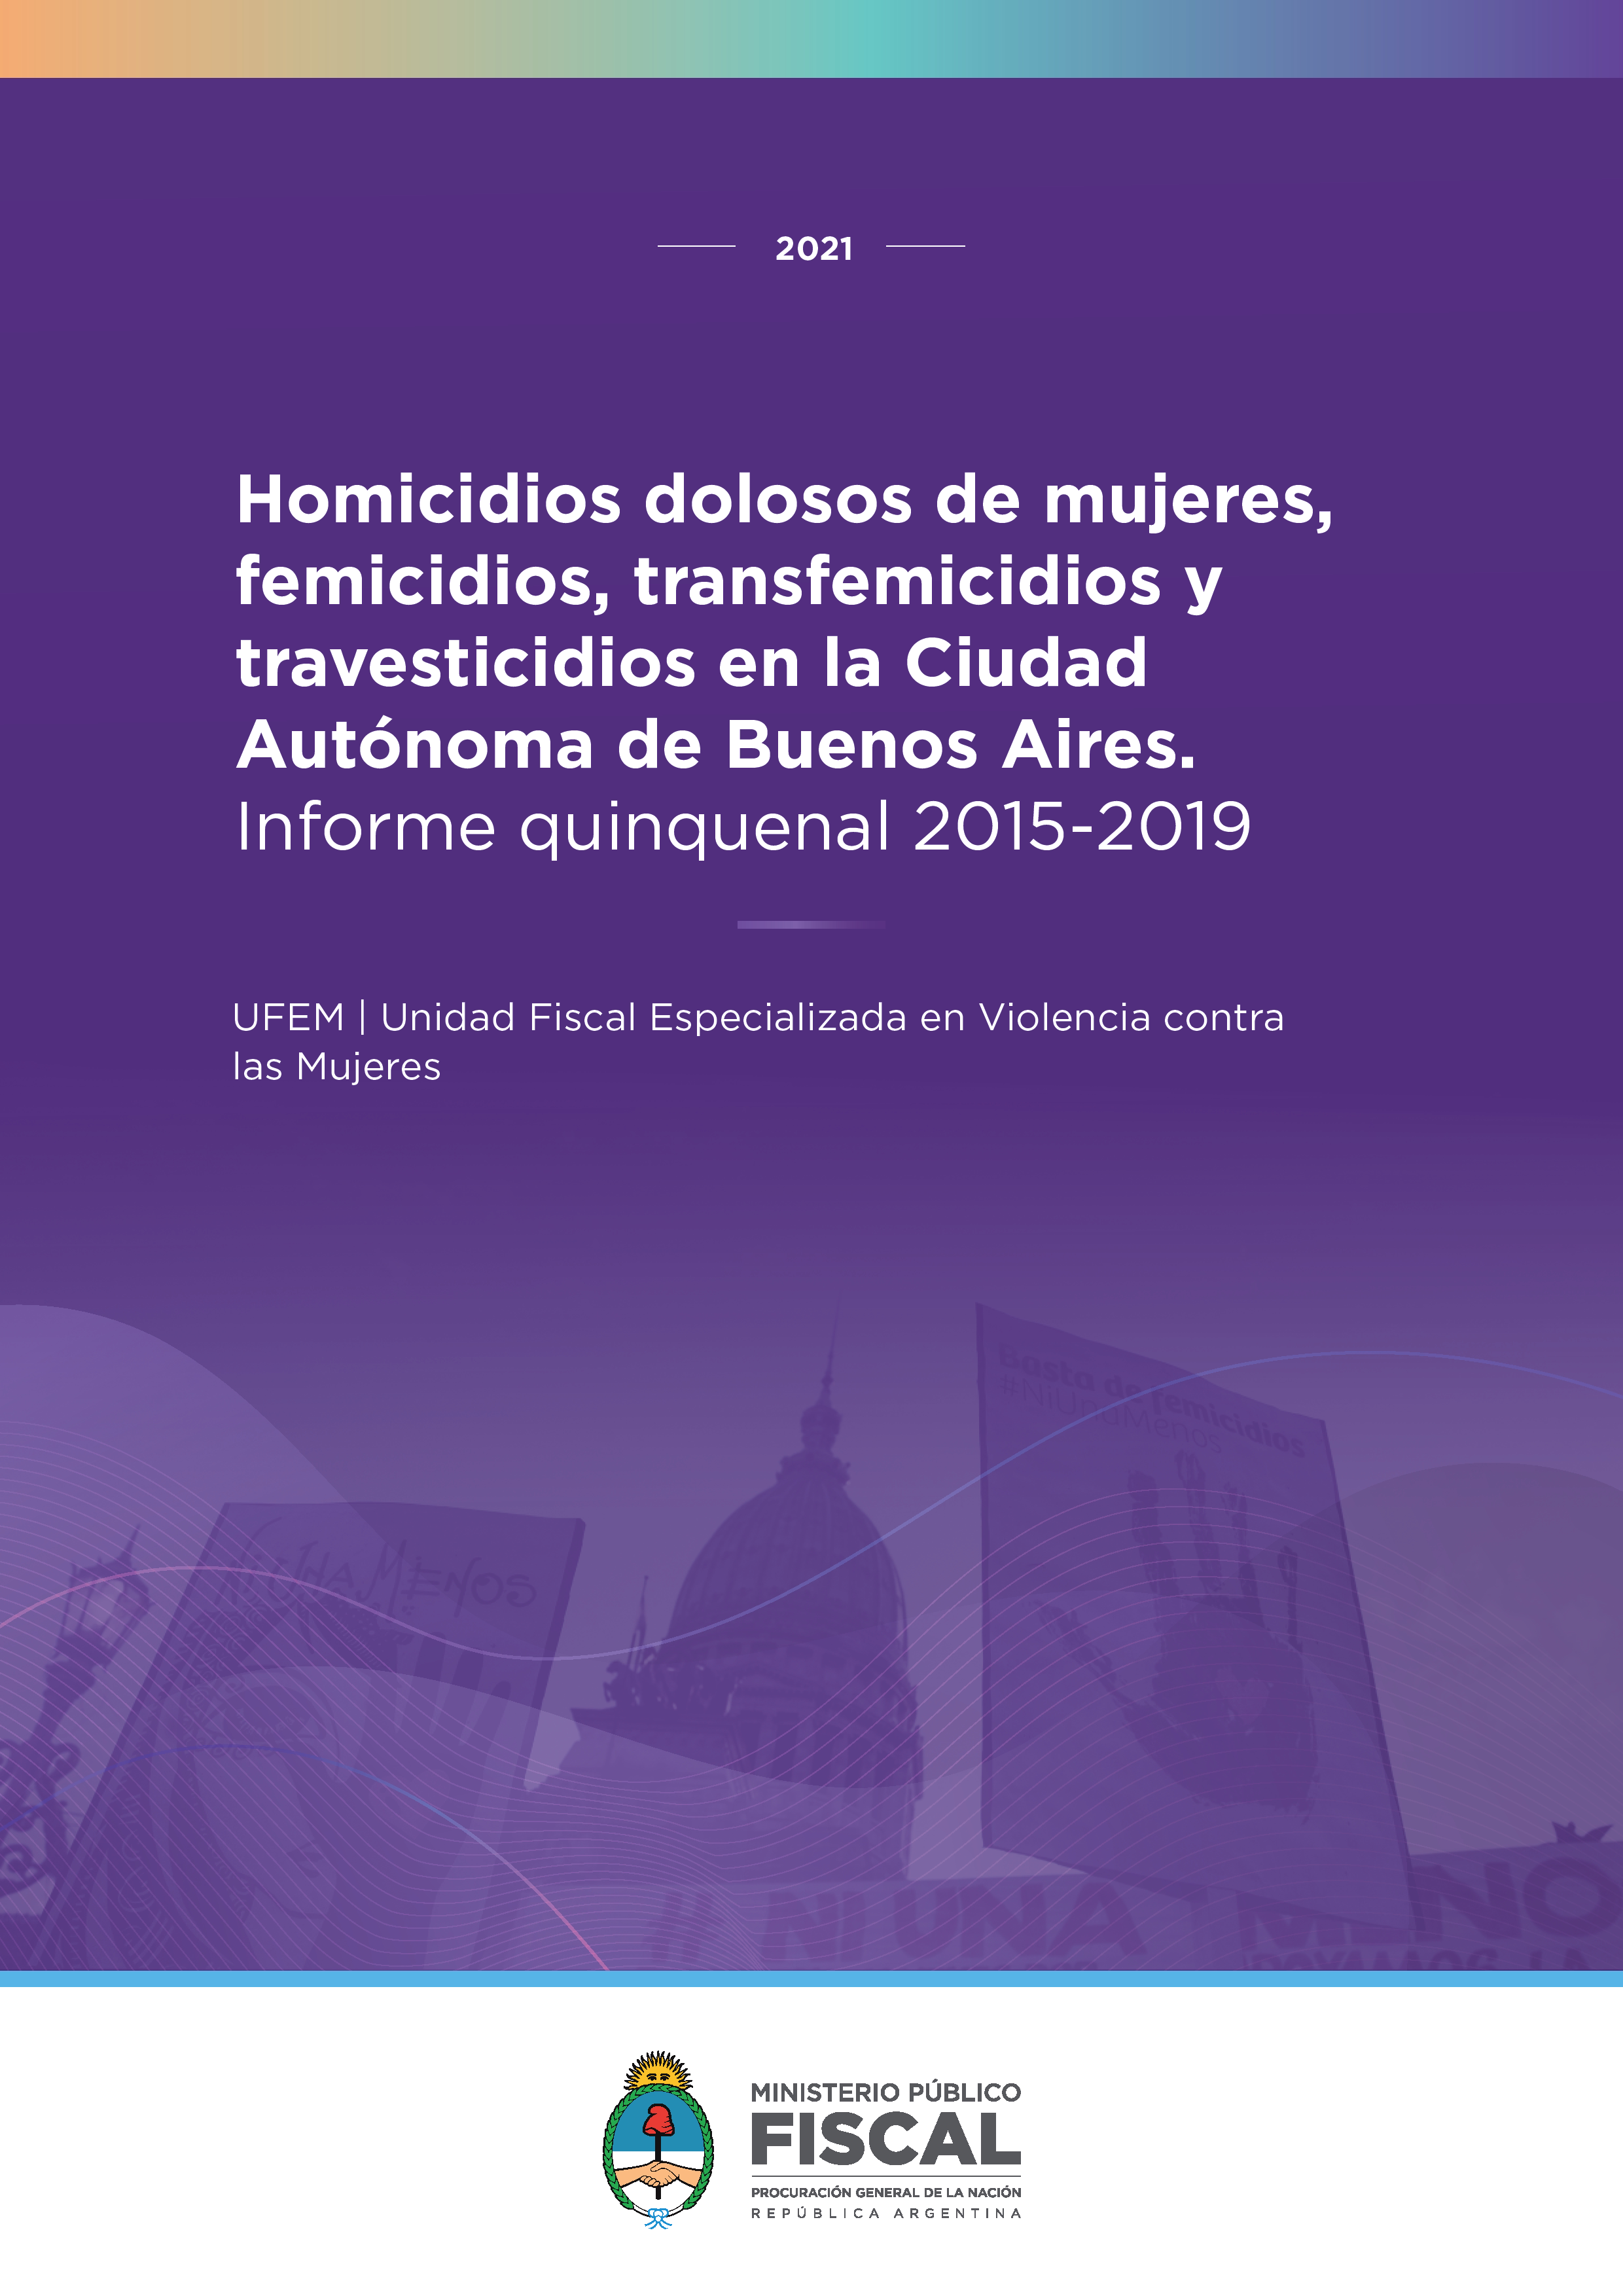 Homicidios dolosos de mujeres, femicidios, transfemicidios y travesticidios en la Ciudad Autónoma de Buenos Aires. Informe quinquenal 2015-2019.